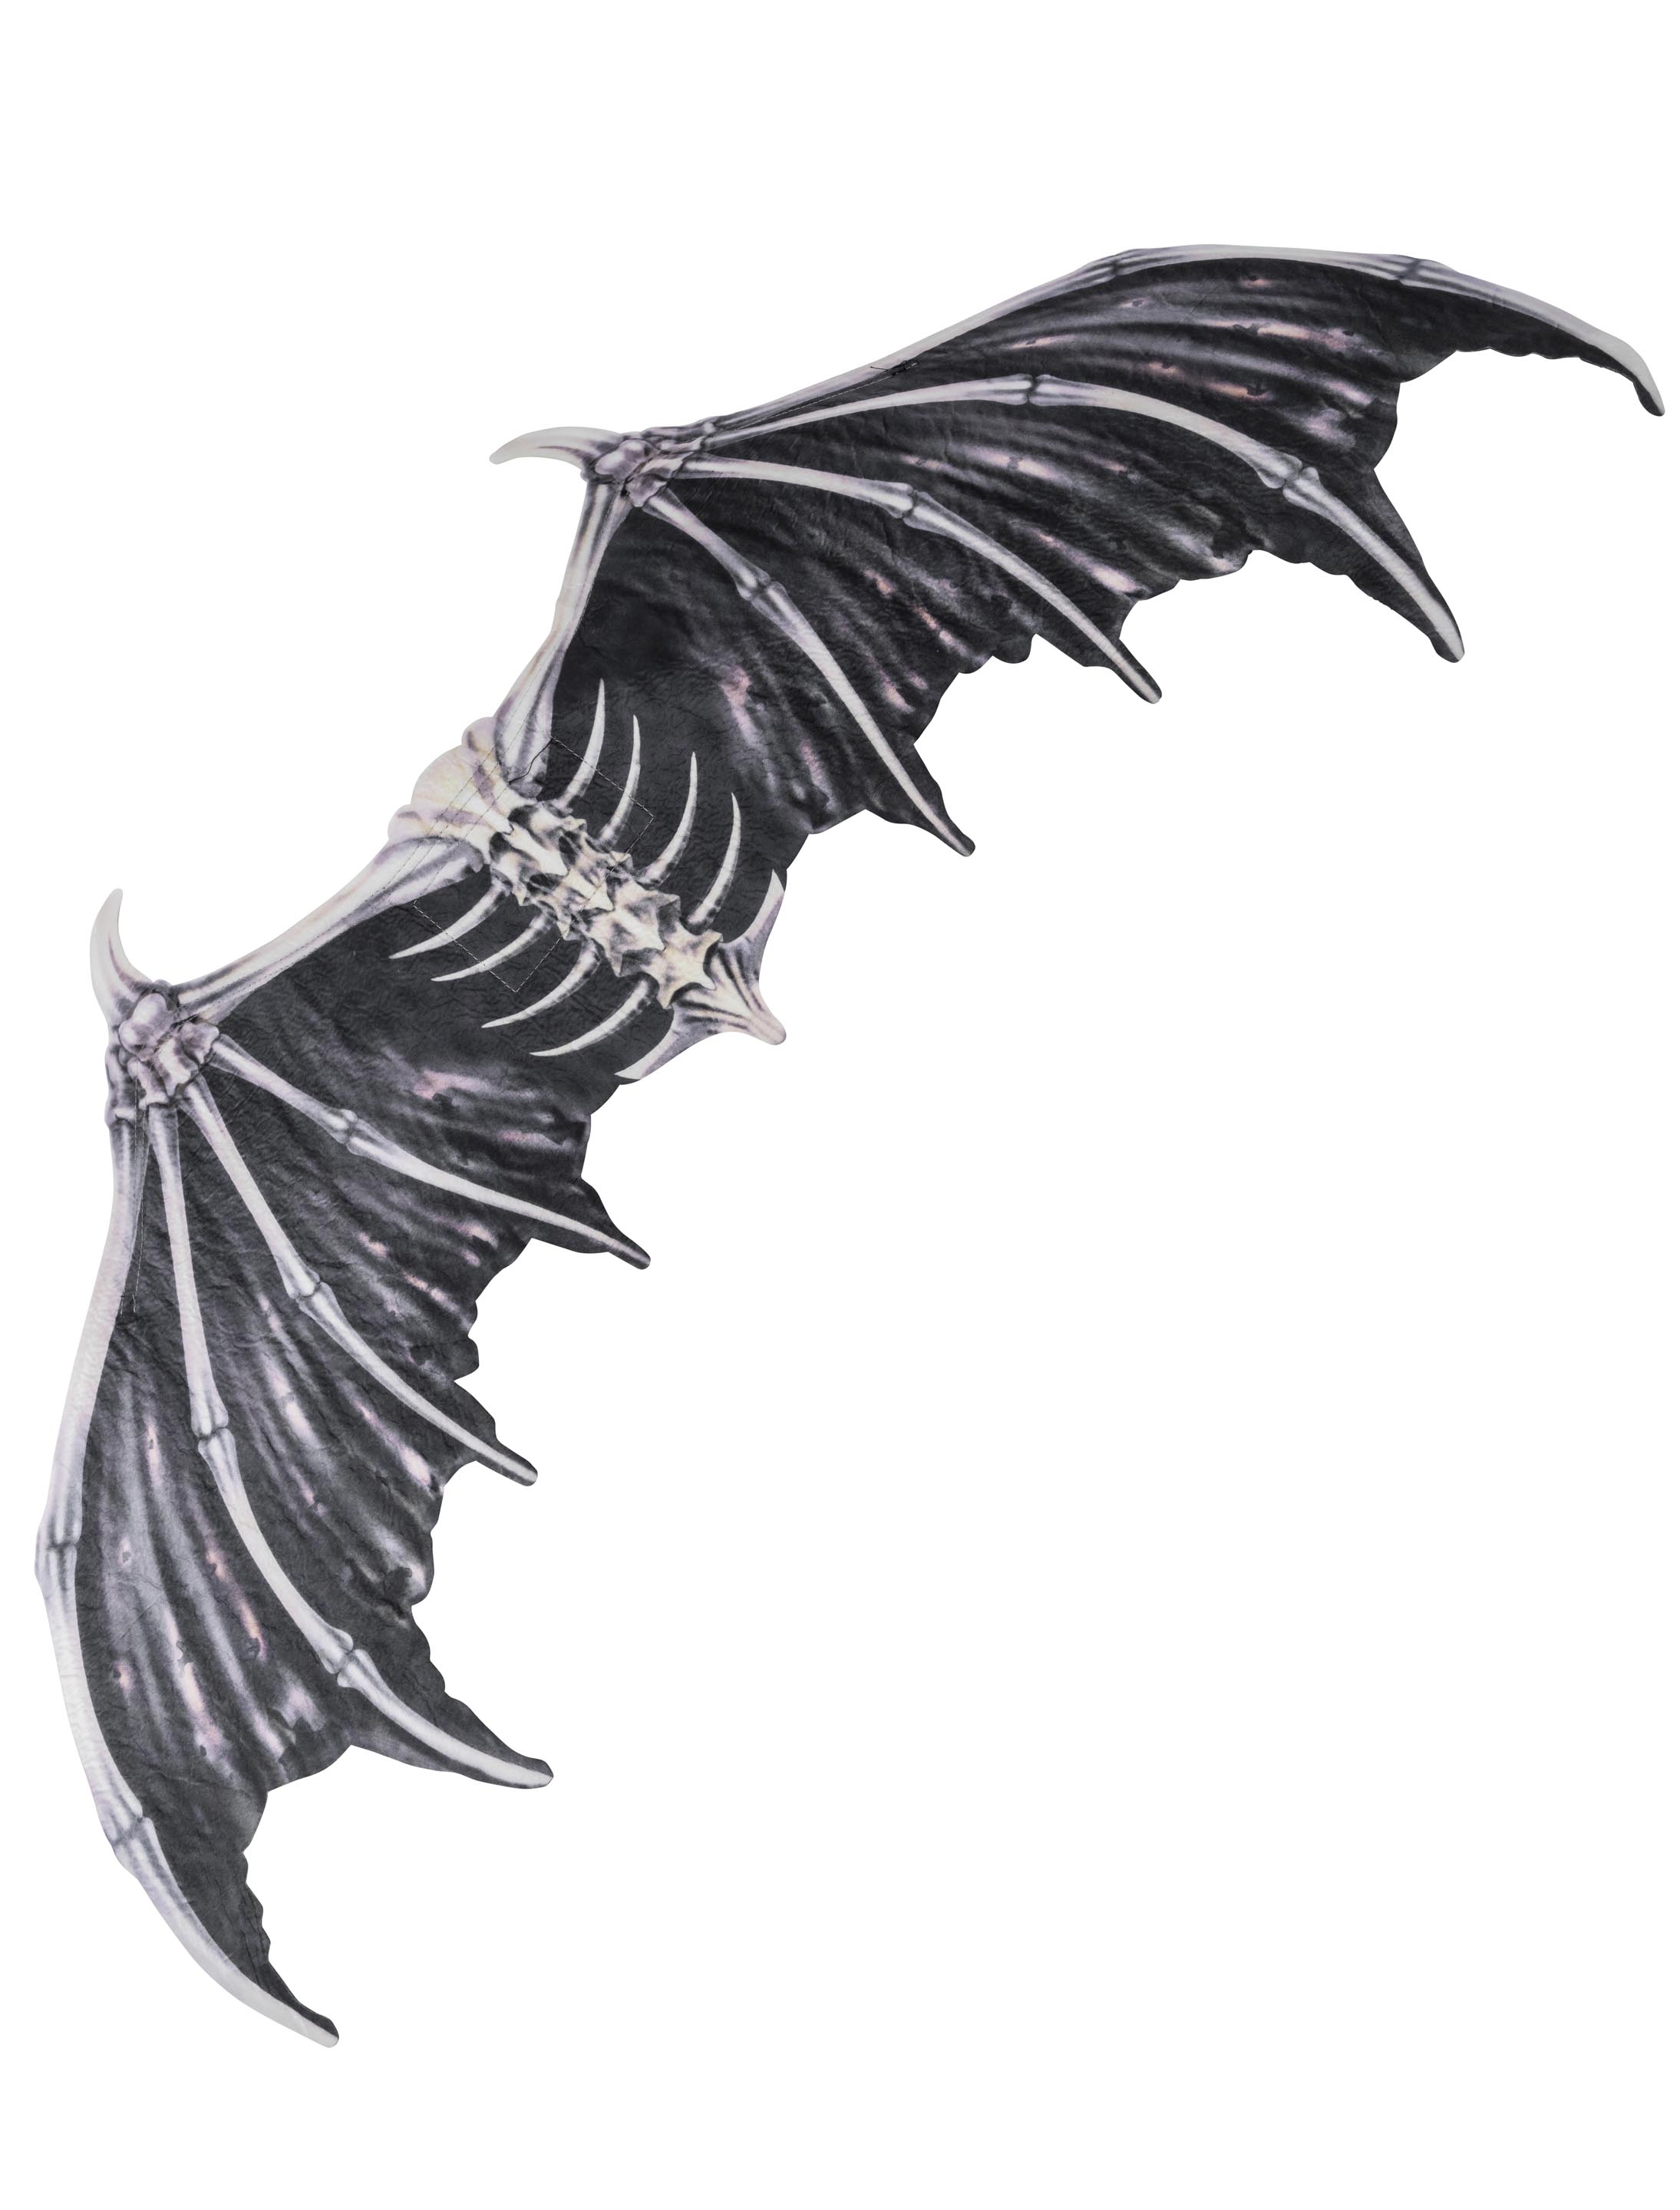 Drachenflügel schwarz ca. 95 x 45 cm